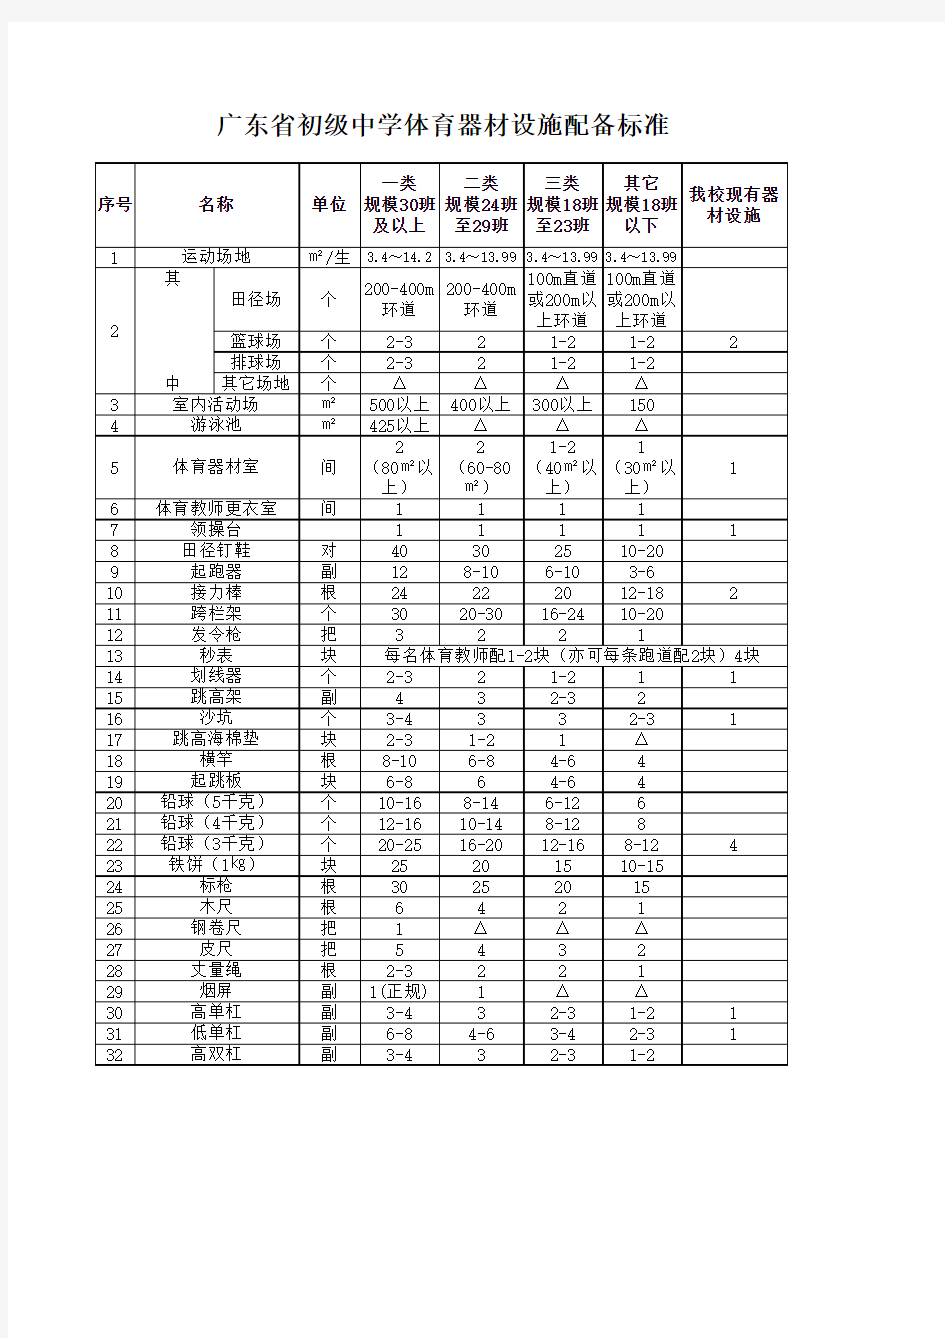 广东省初级中学体育器材设施配备标准